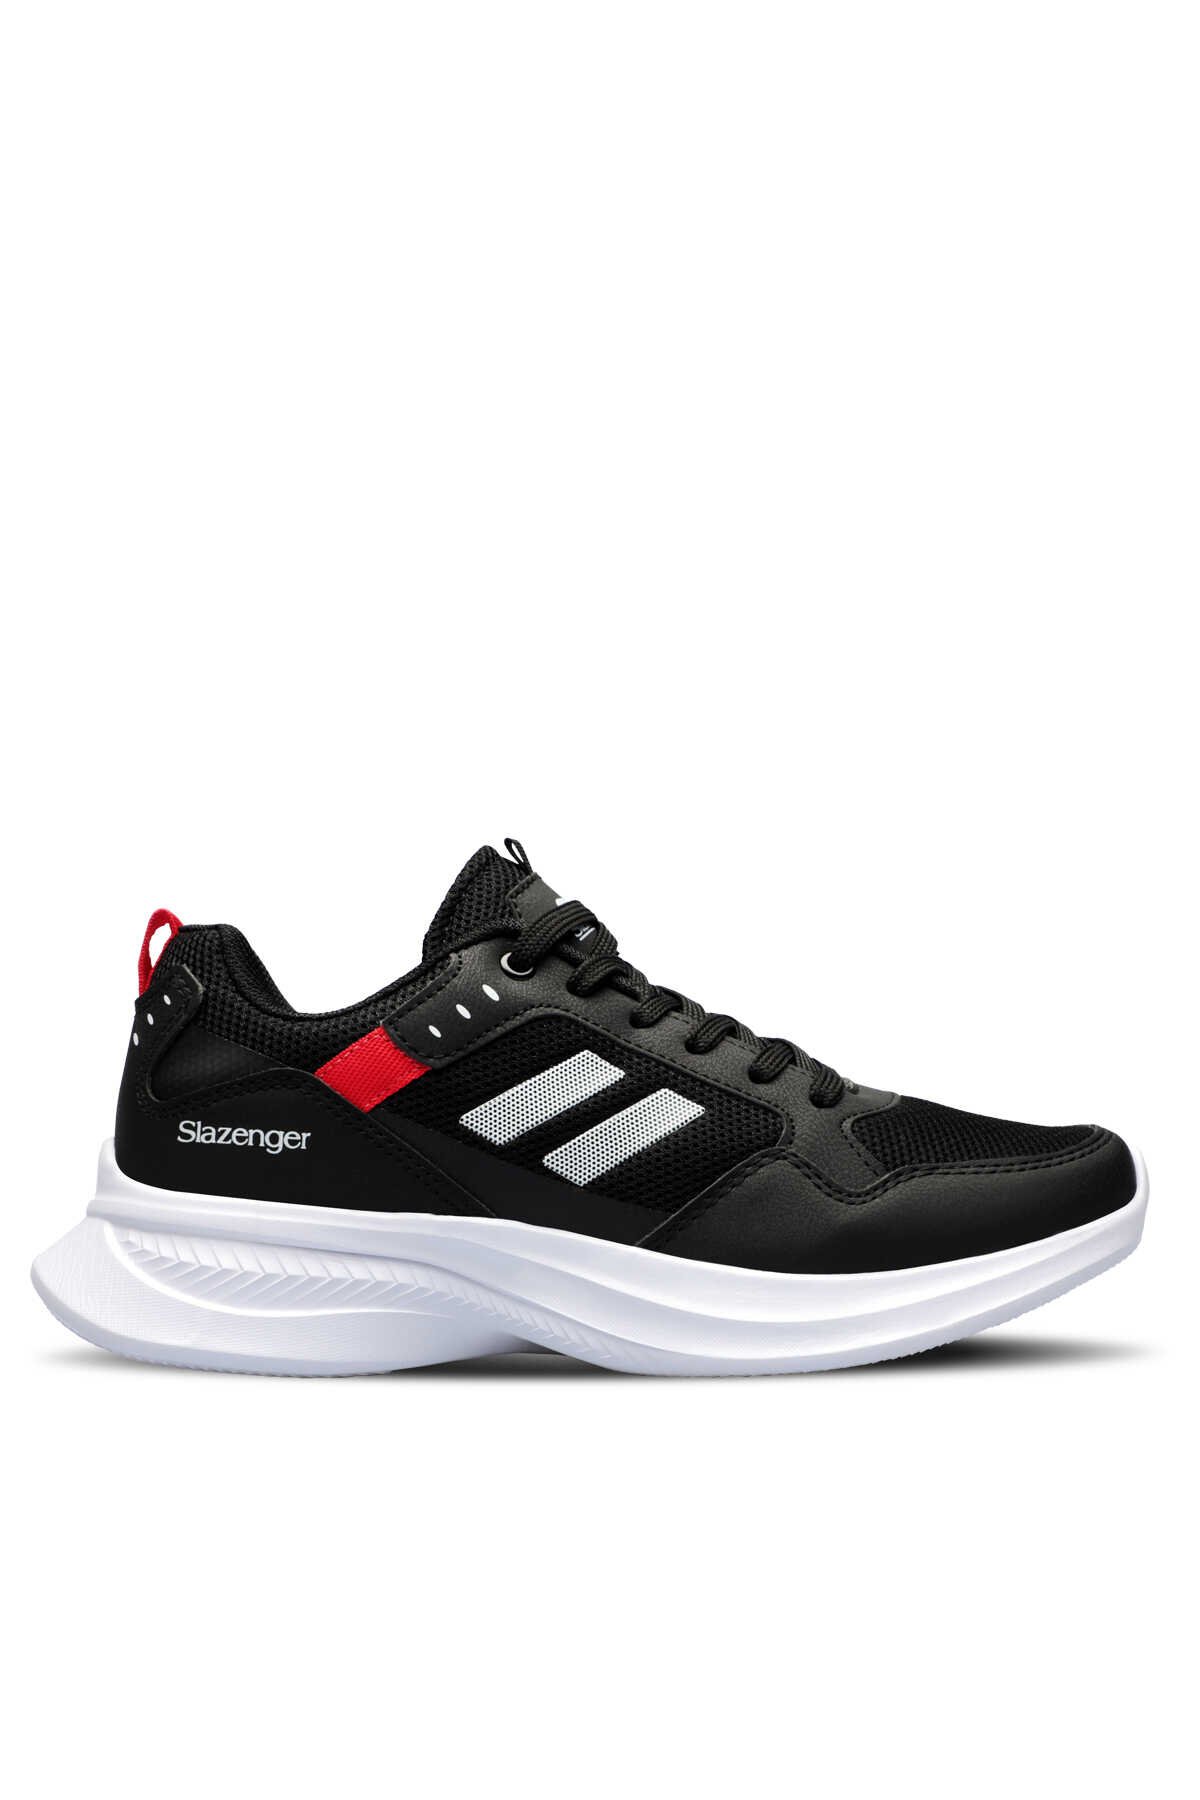 Slazenger - Slazenger ZAYN Sneaker Erkek Ayakkabı Siyah / Beyaz / Kırmızı